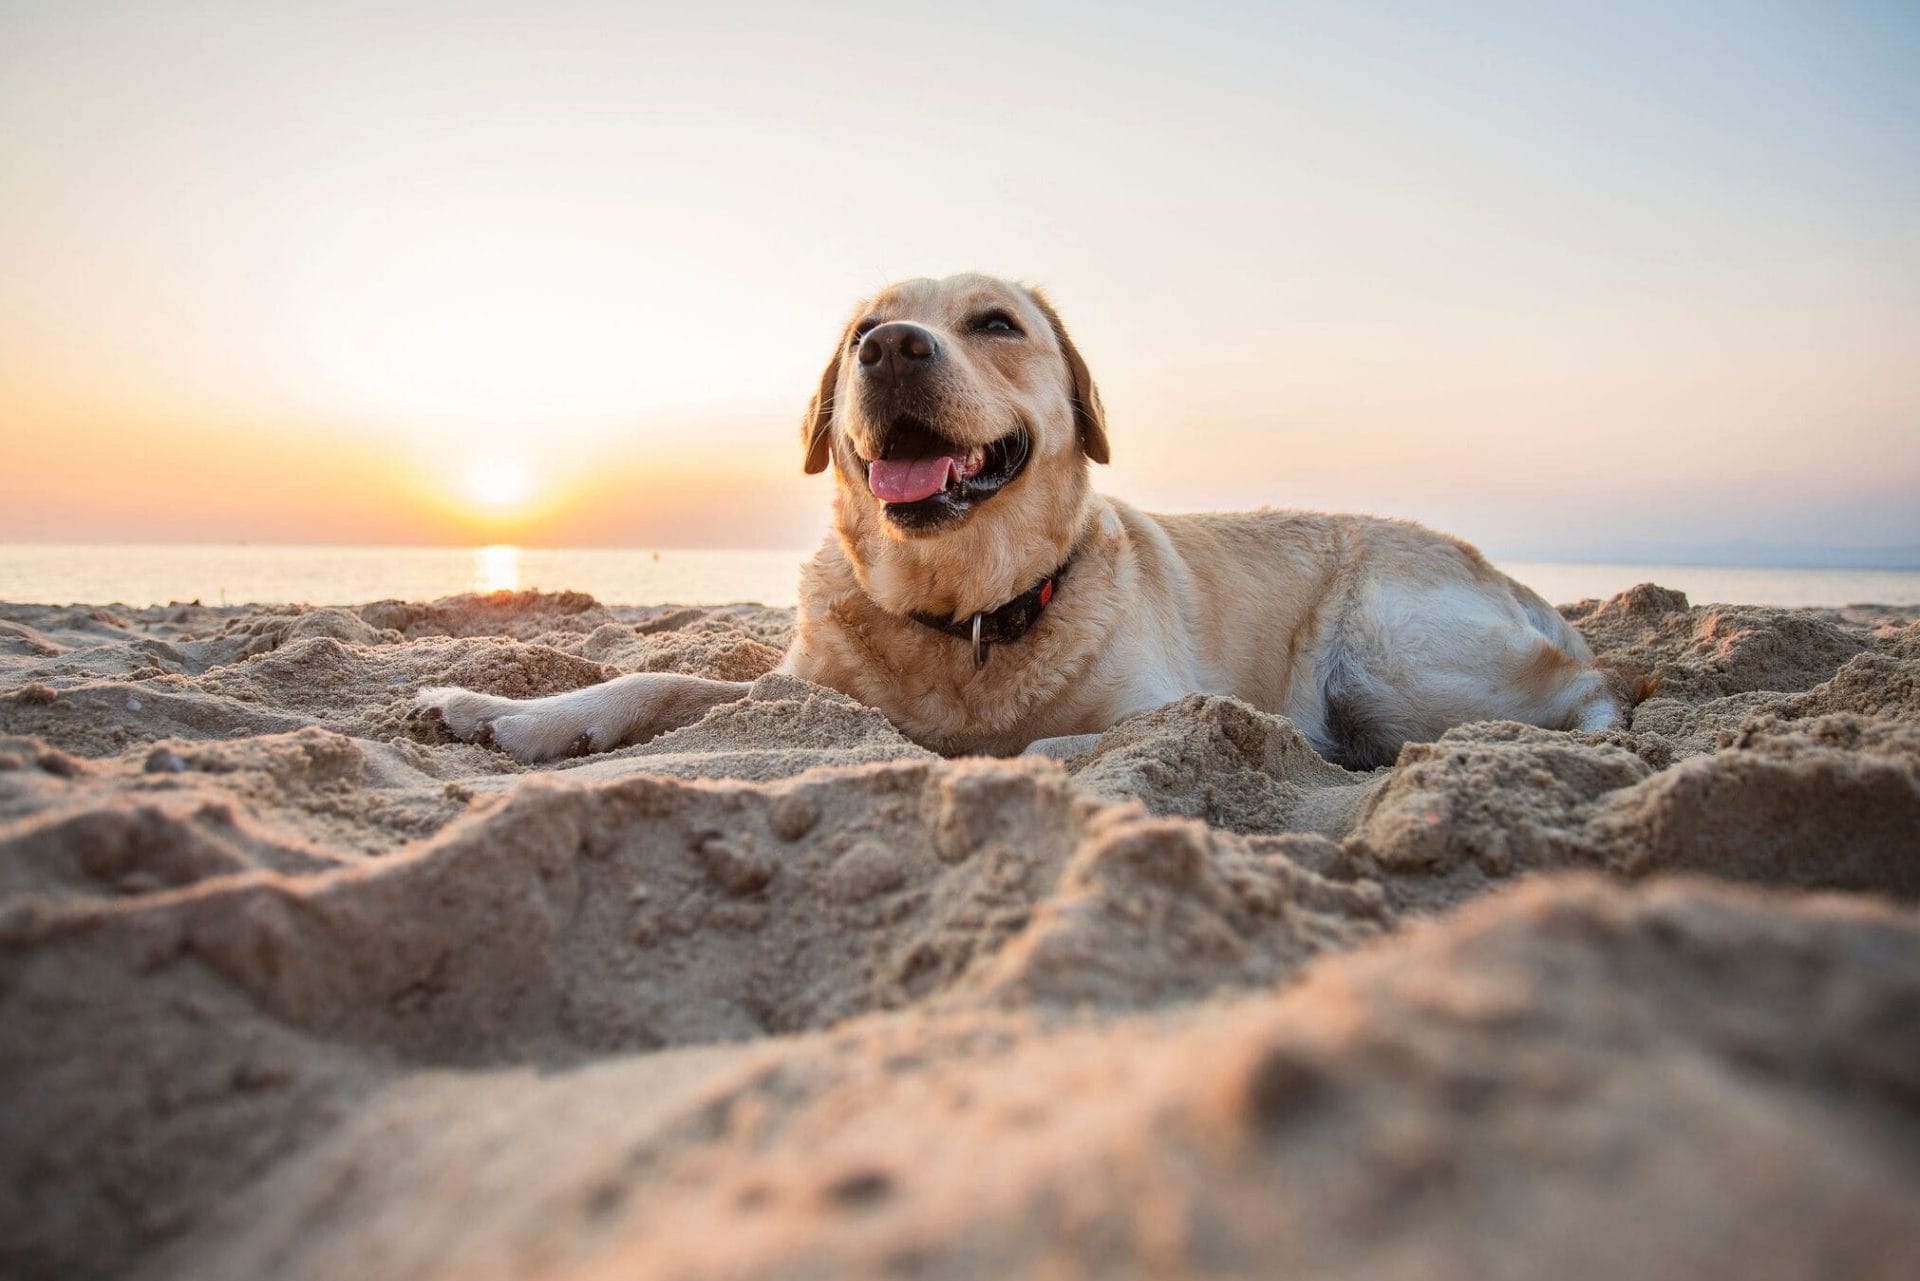 Dog-on-beach-min